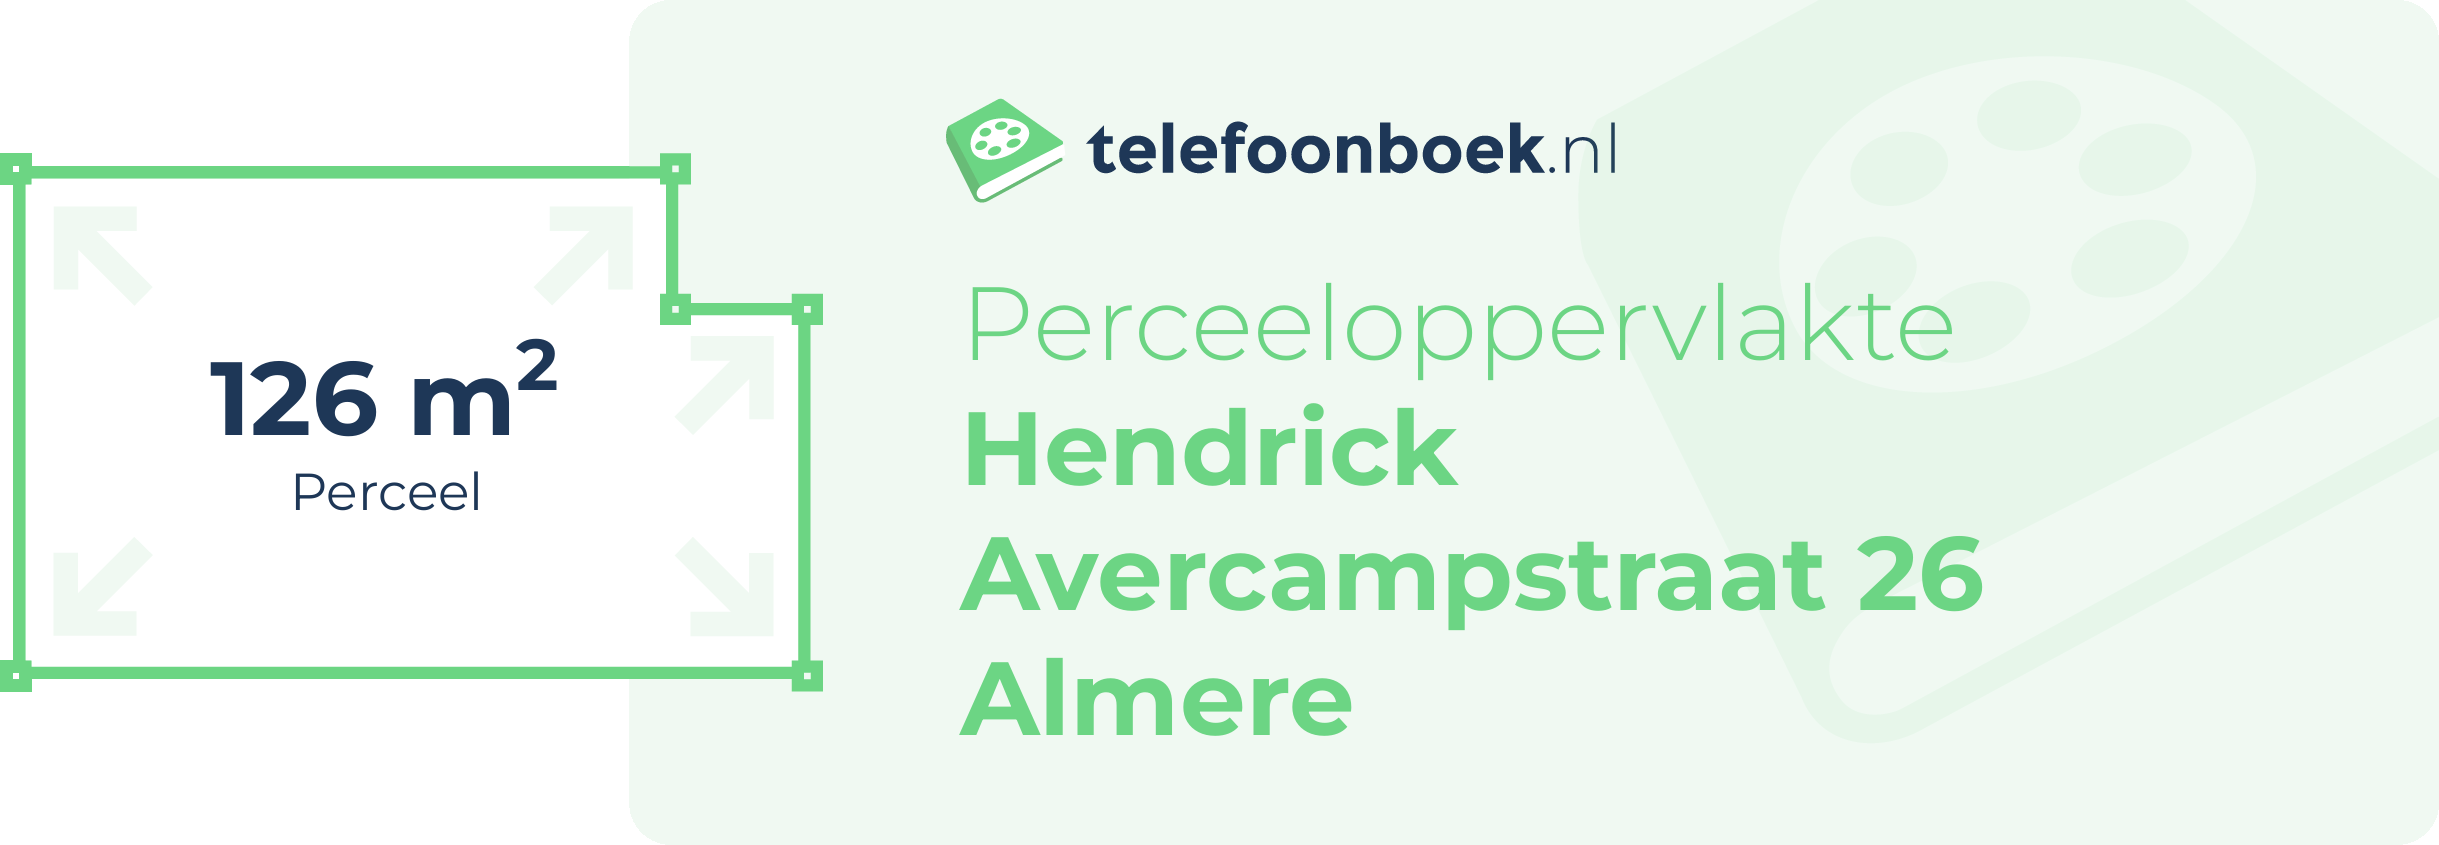 Perceeloppervlakte Hendrick Avercampstraat 26 Almere